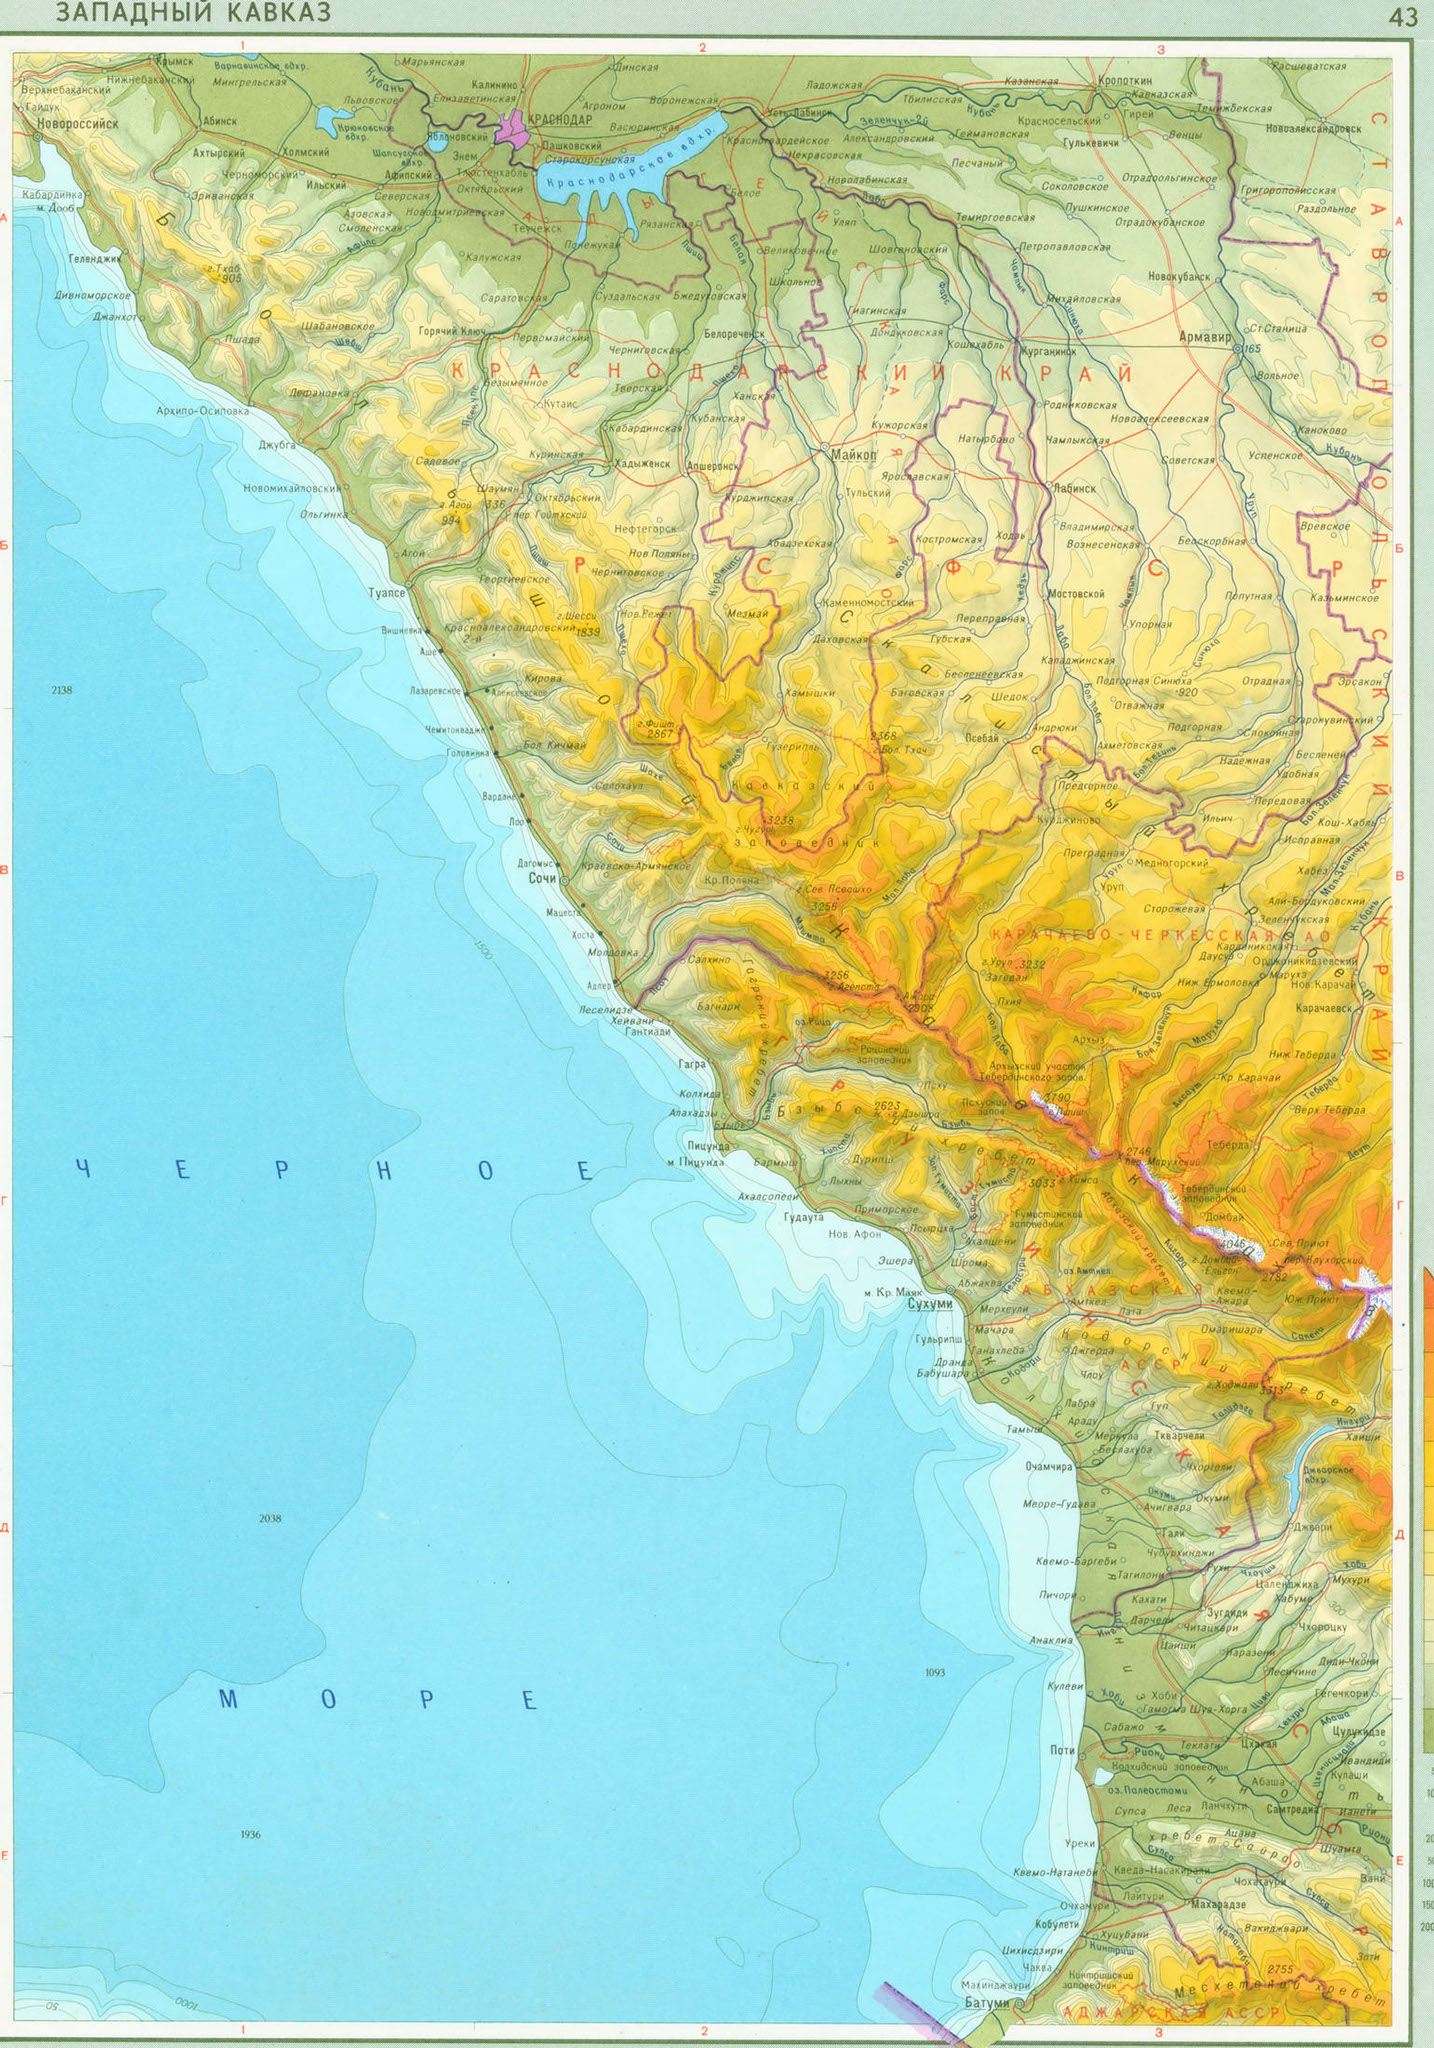 Карта Западного Кавказа